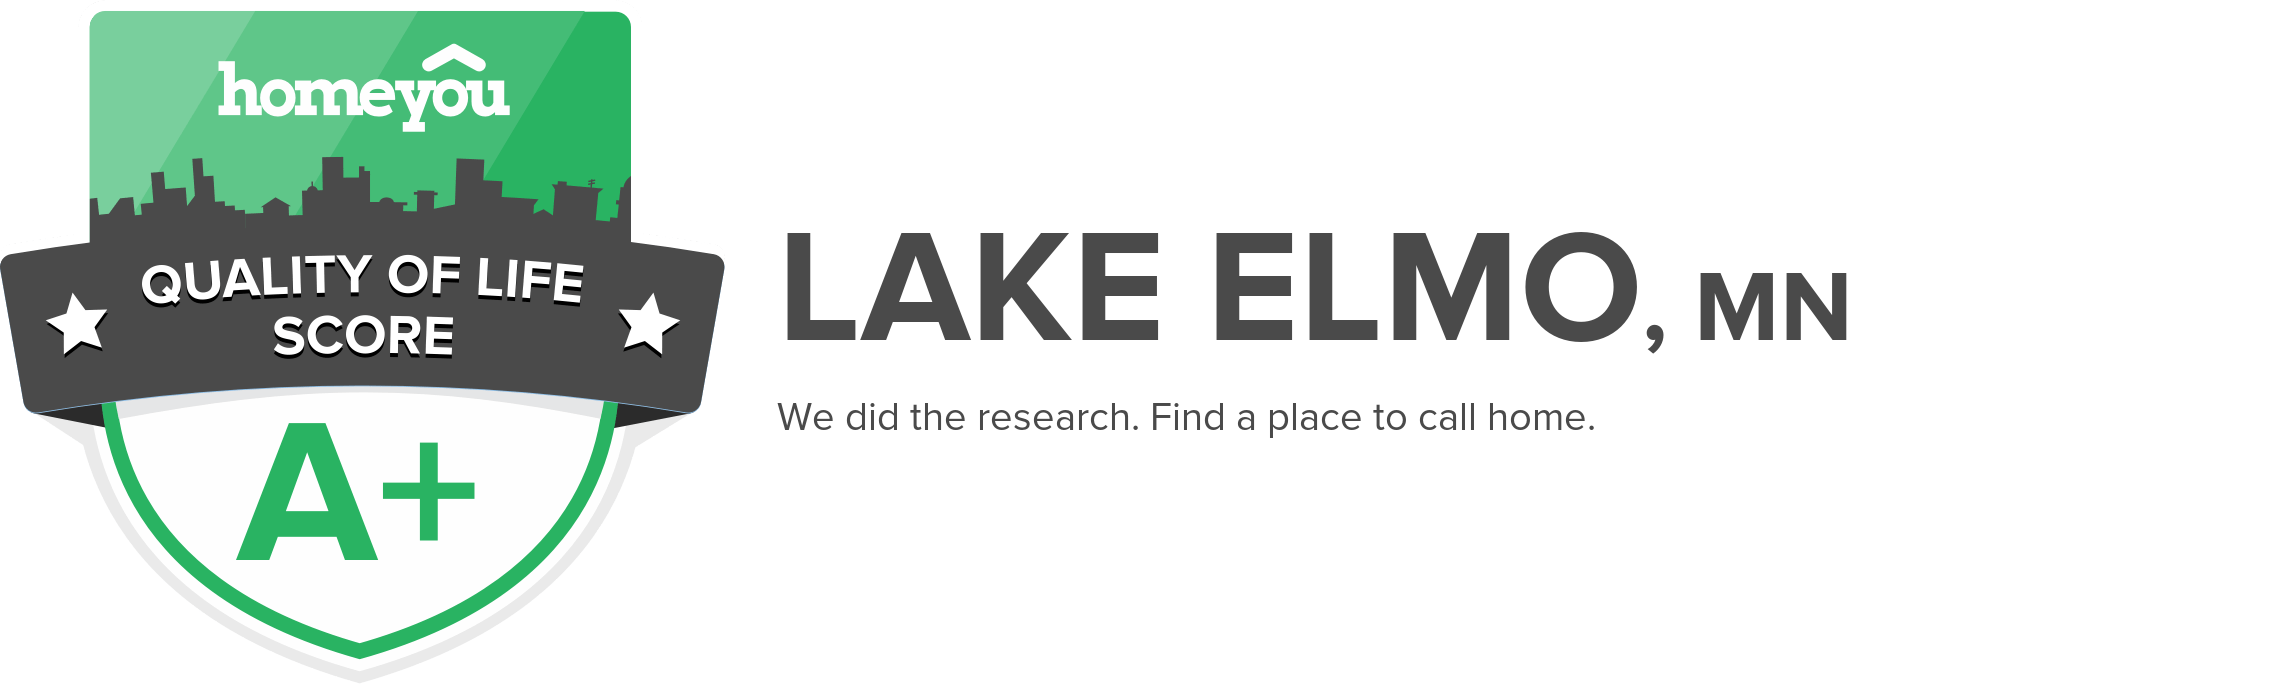 Lake Elmo, MN